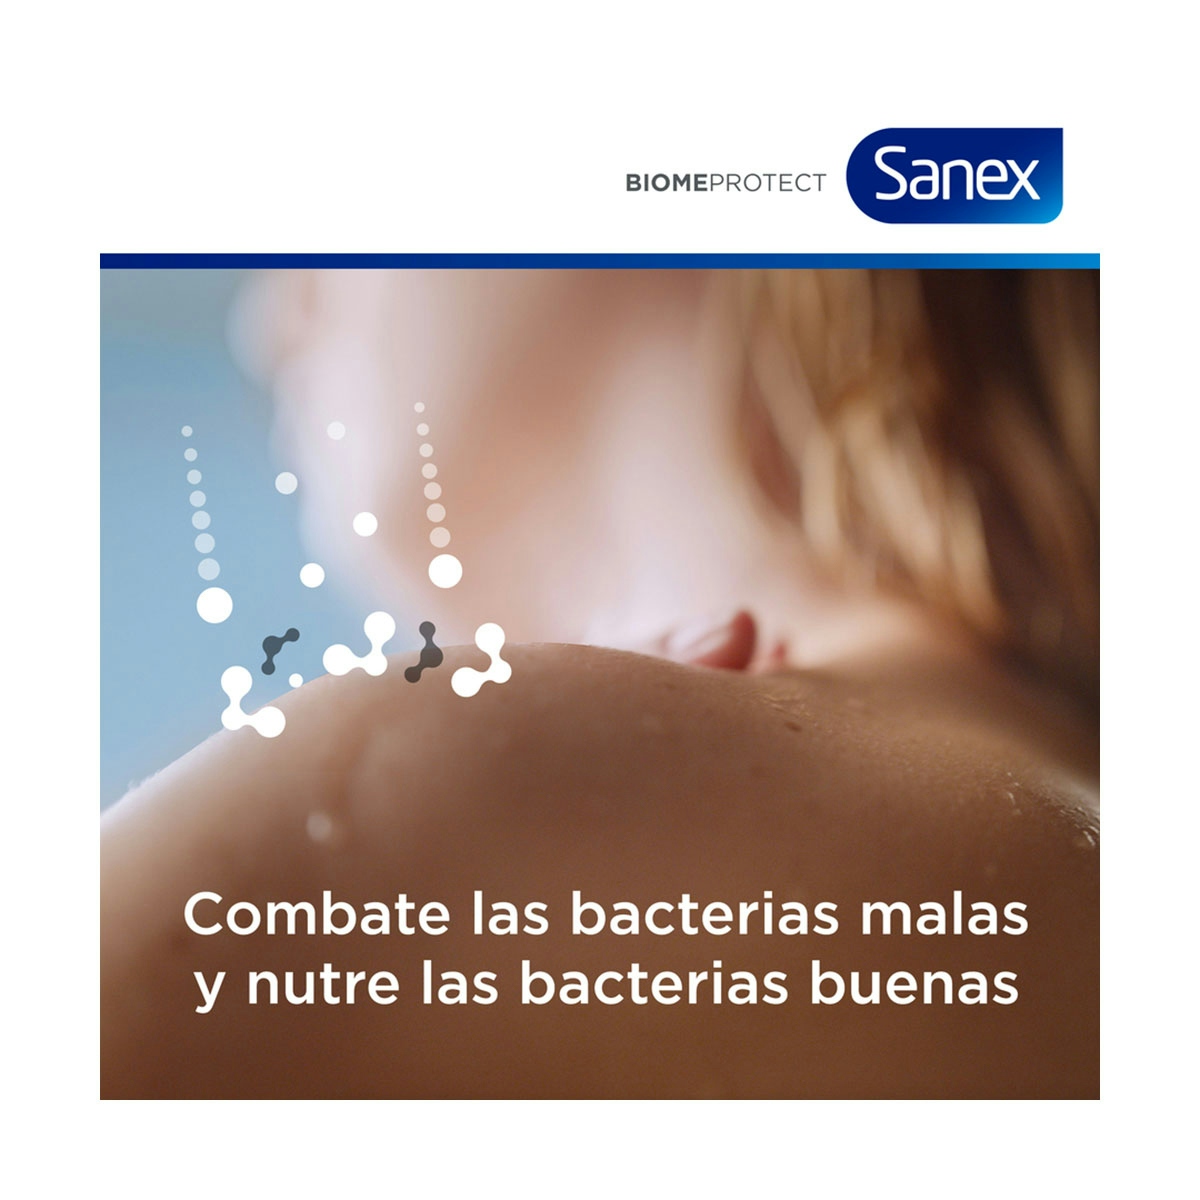 Gel de ducha o baño Sanex BiomeProtect Dermo Sensitive piel sensible 550ml